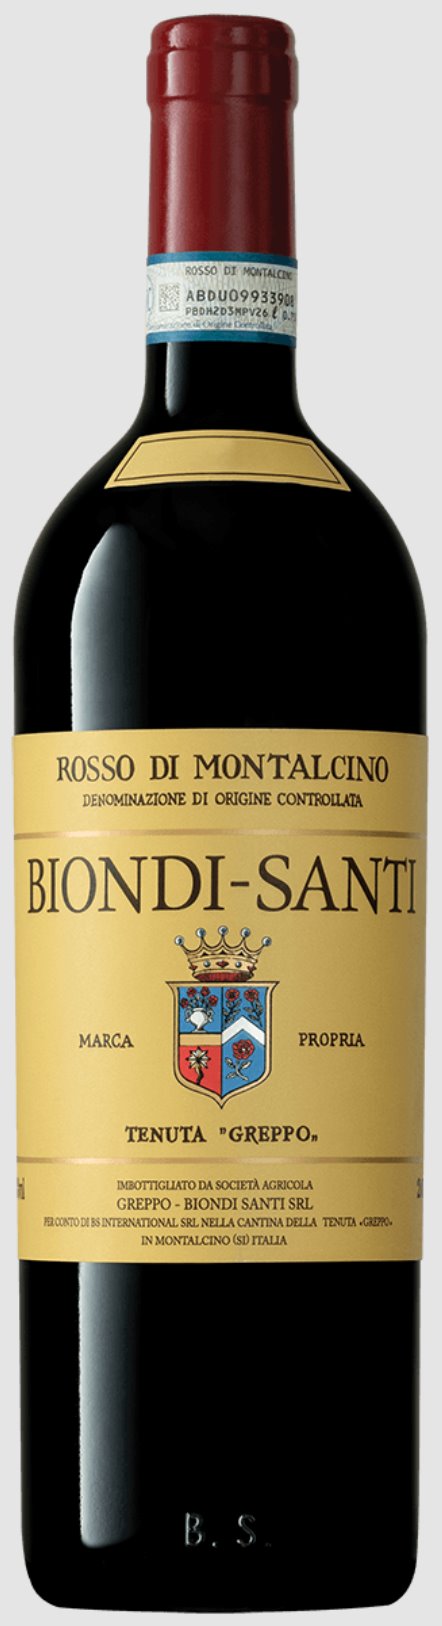 Biondi Santi Rosso di Montalcino 2019 - 750ml